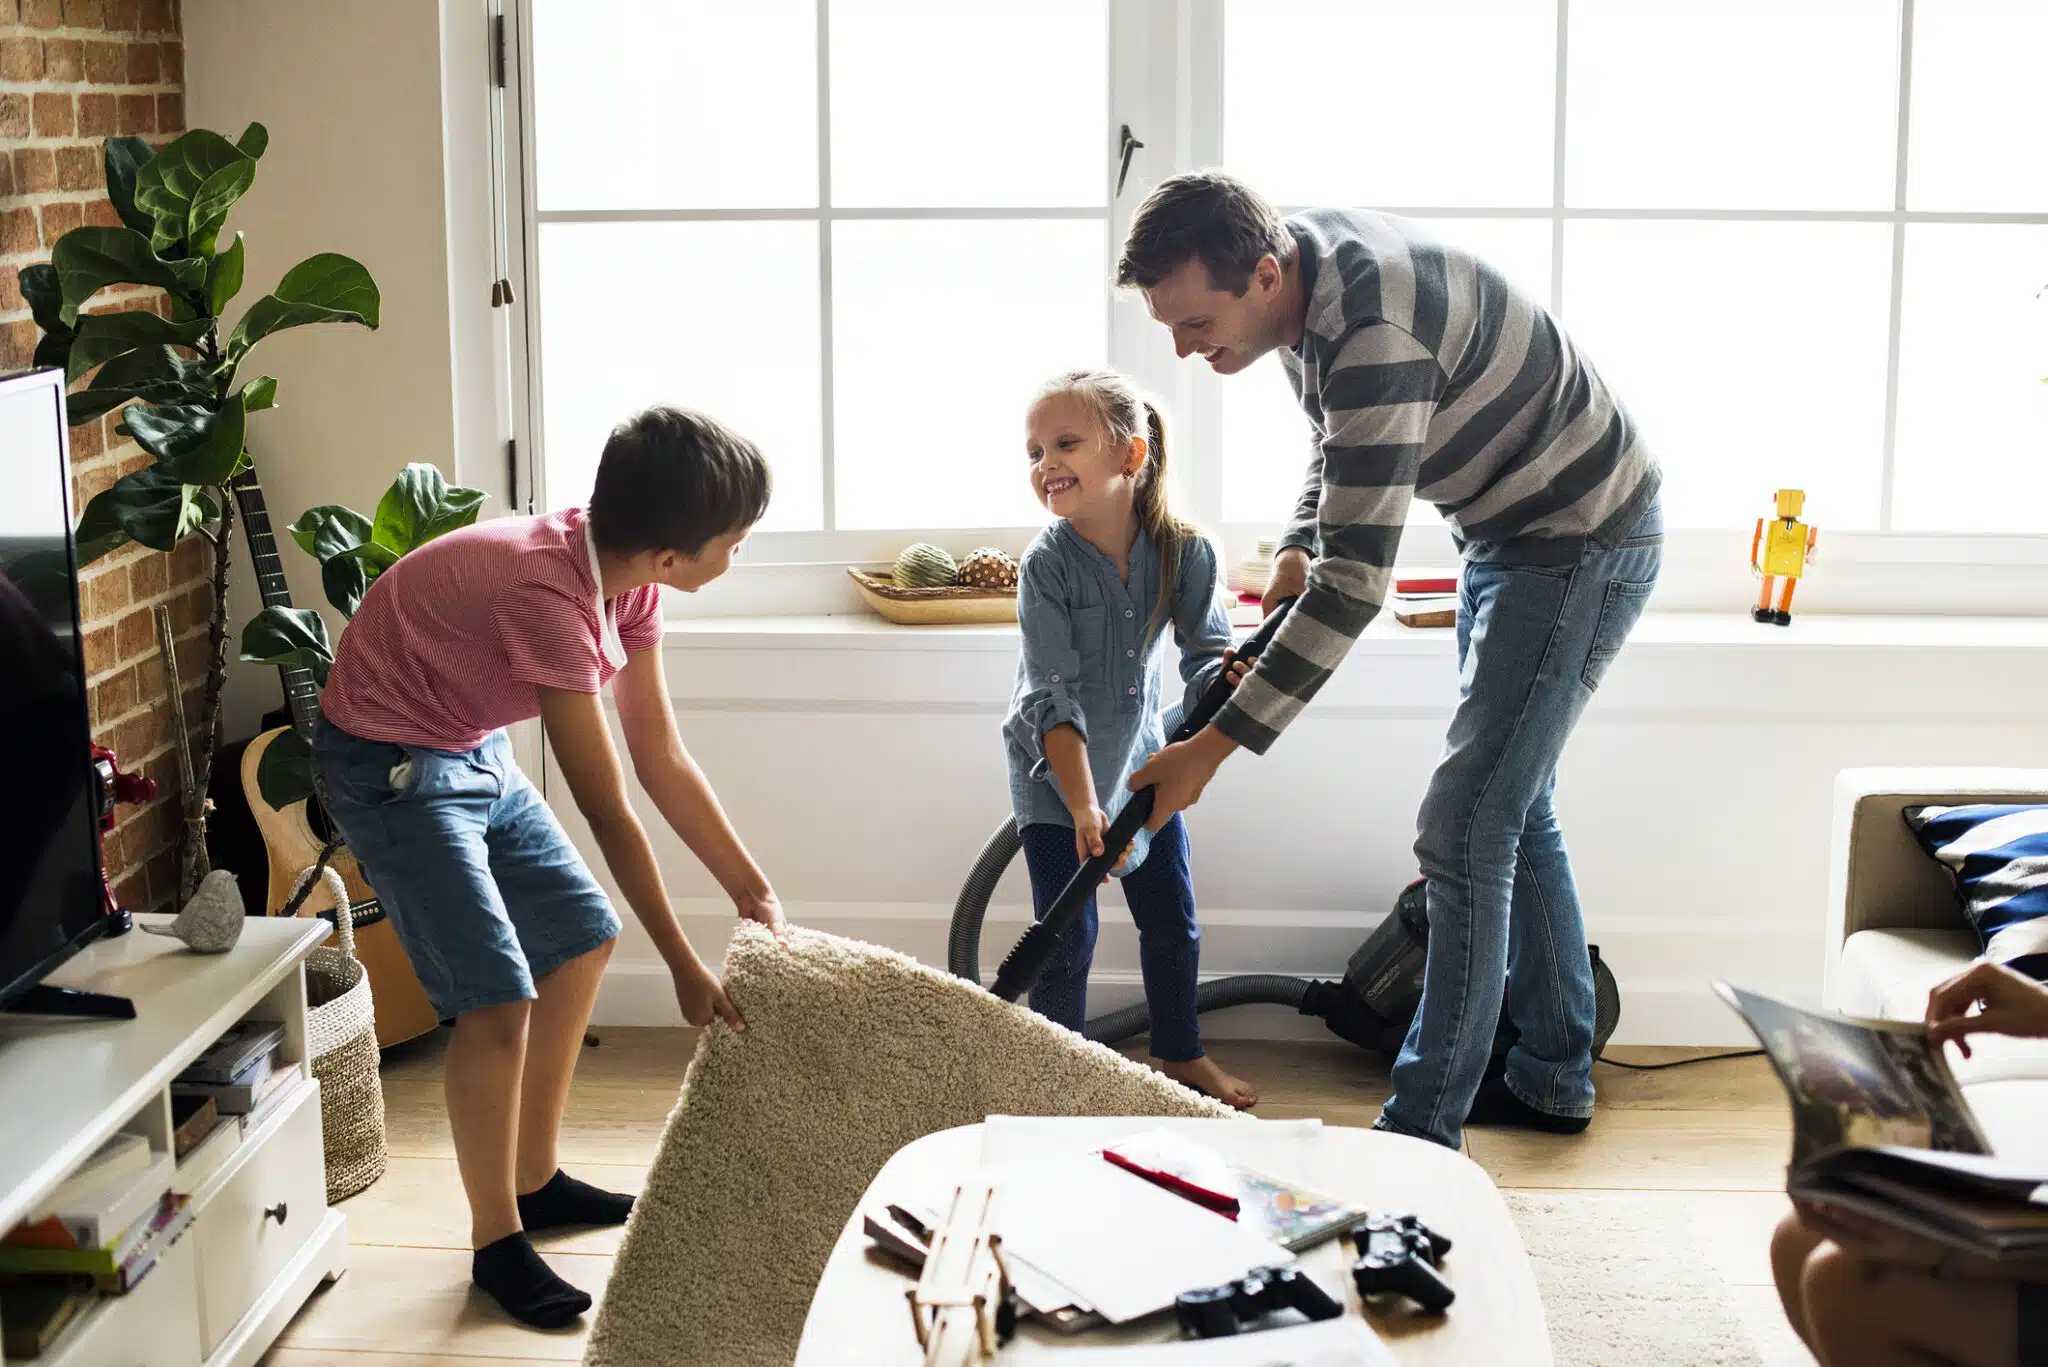 Limpieza del hogar en familia